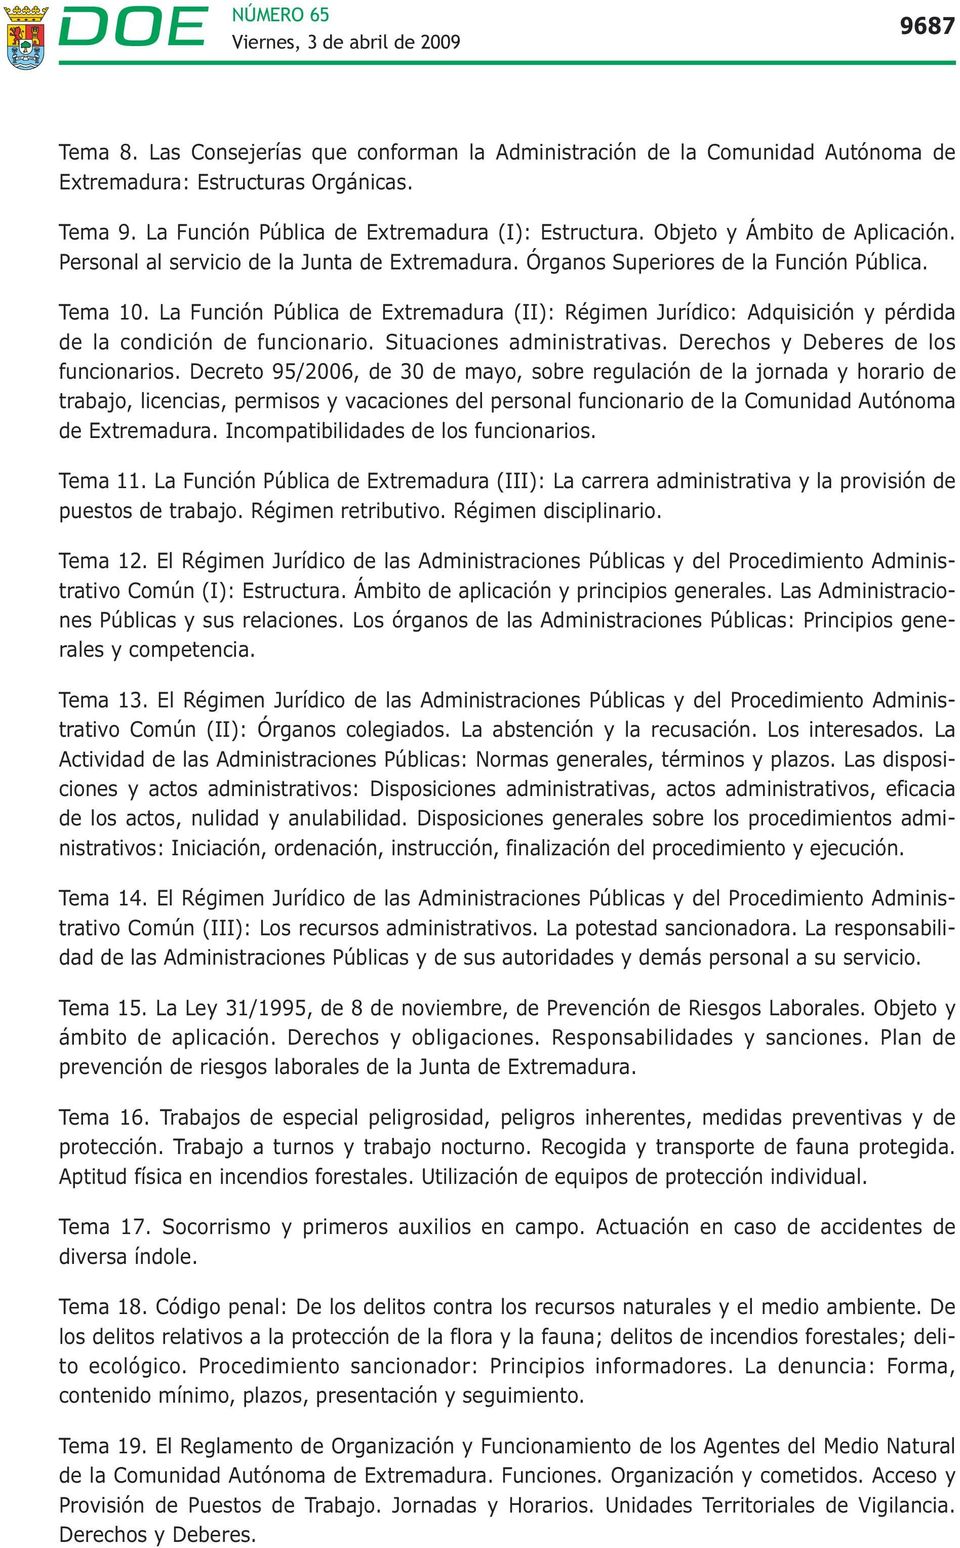 La Función Pública de Extremadura (II): Régimen Jurídico: Adquisición y pérdida de la condición de funcionario. Situaciones administrativas. Derechos y Deberes de los funcionarios.